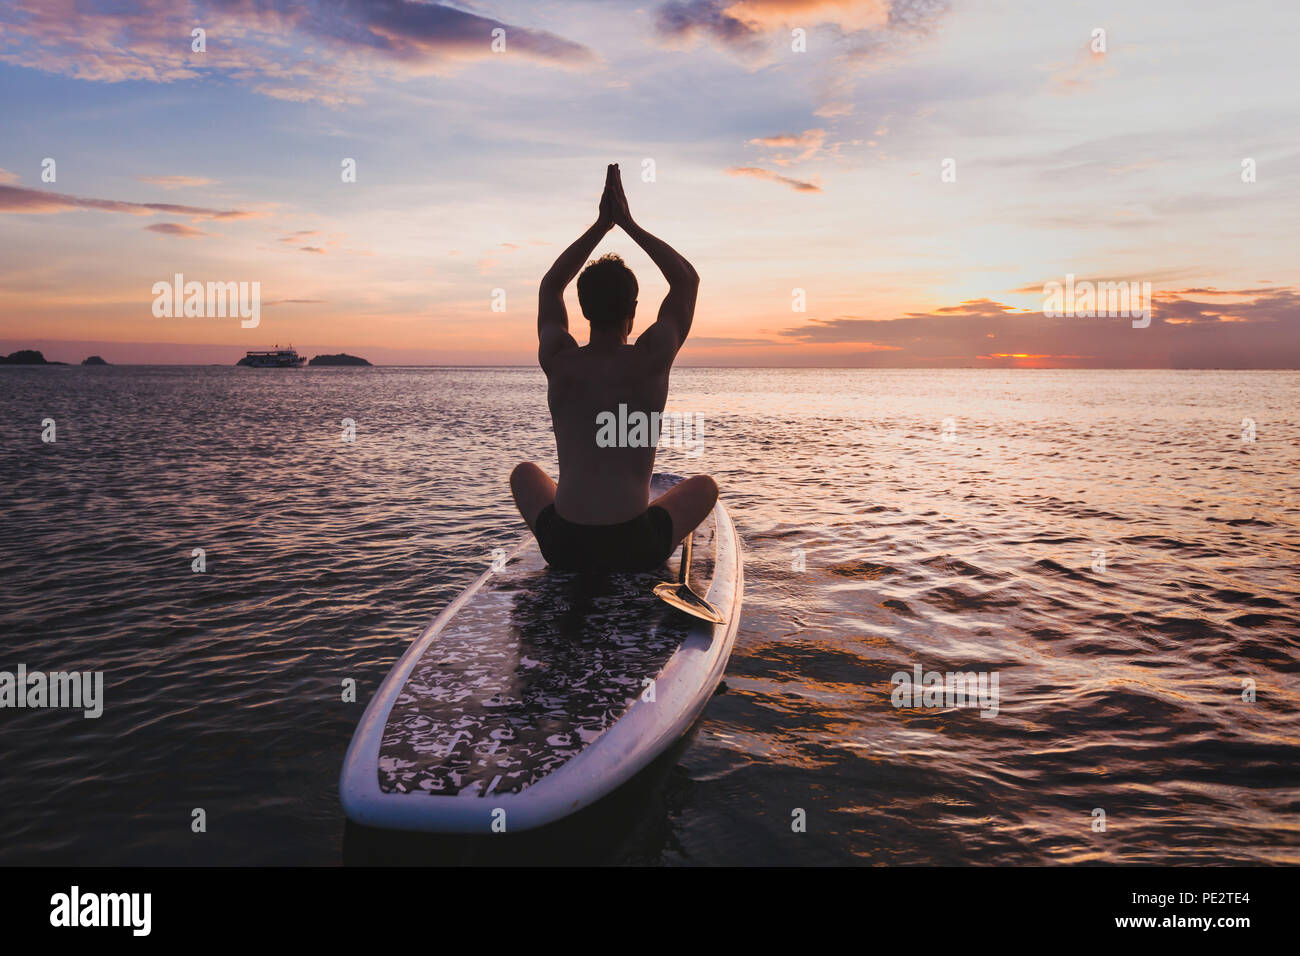 Yoga sur le SUP, silhouette de l'homme assis dans la position du lotus sur stand up paddle board Banque D'Images